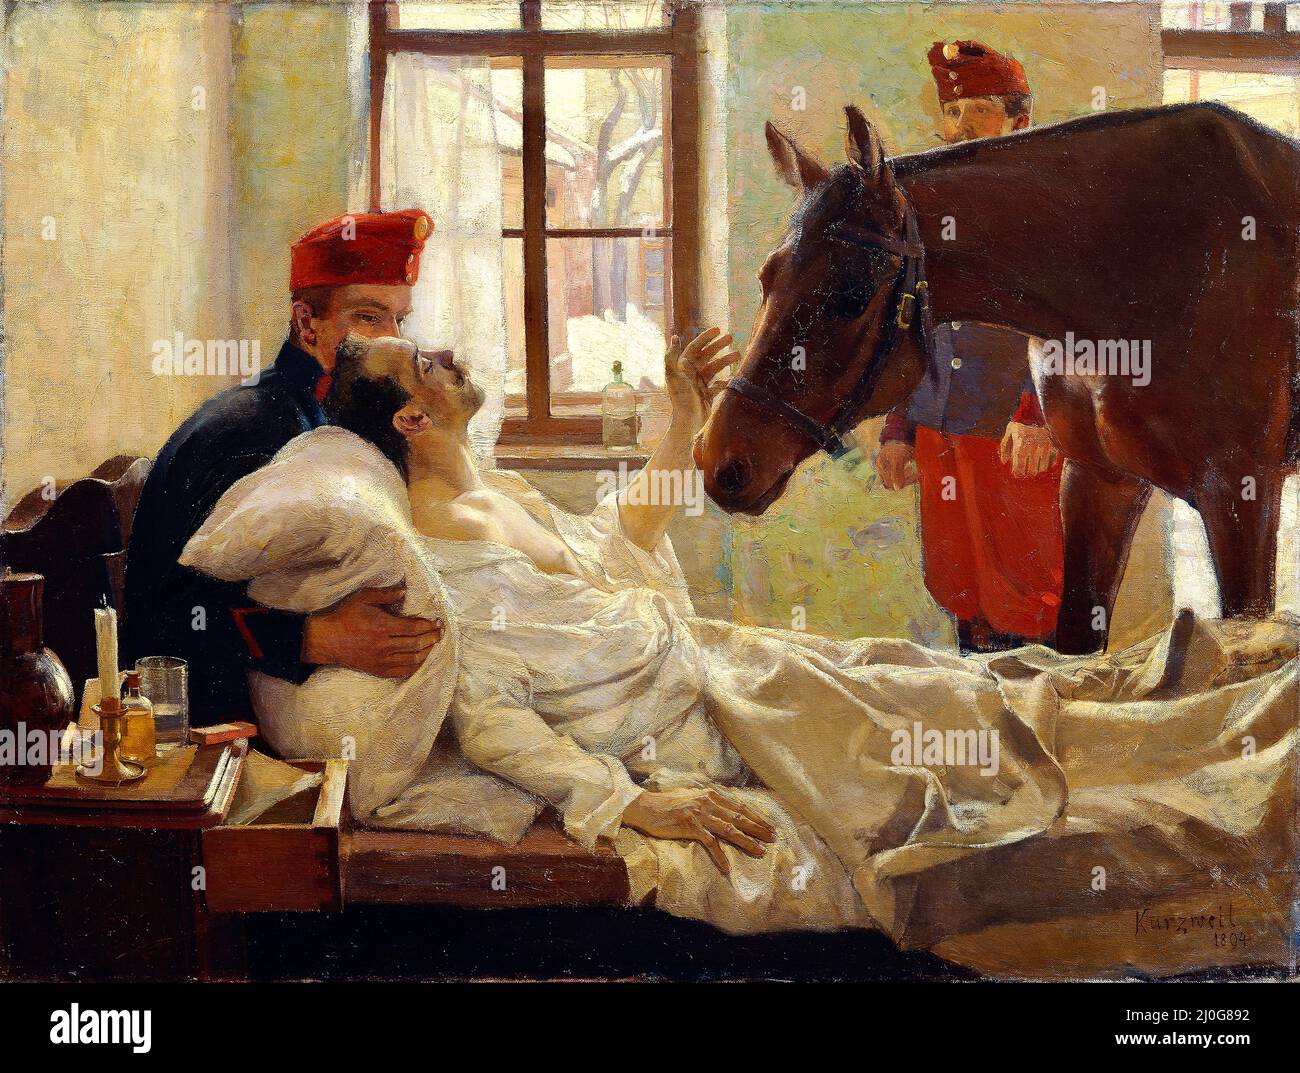 Max Kurzweil - Ein lieber besuch ein letzer besuch ein alter Soldat auf seinem Totenbett wird von seinem treuen Pferd-1894 besucht Stockfoto